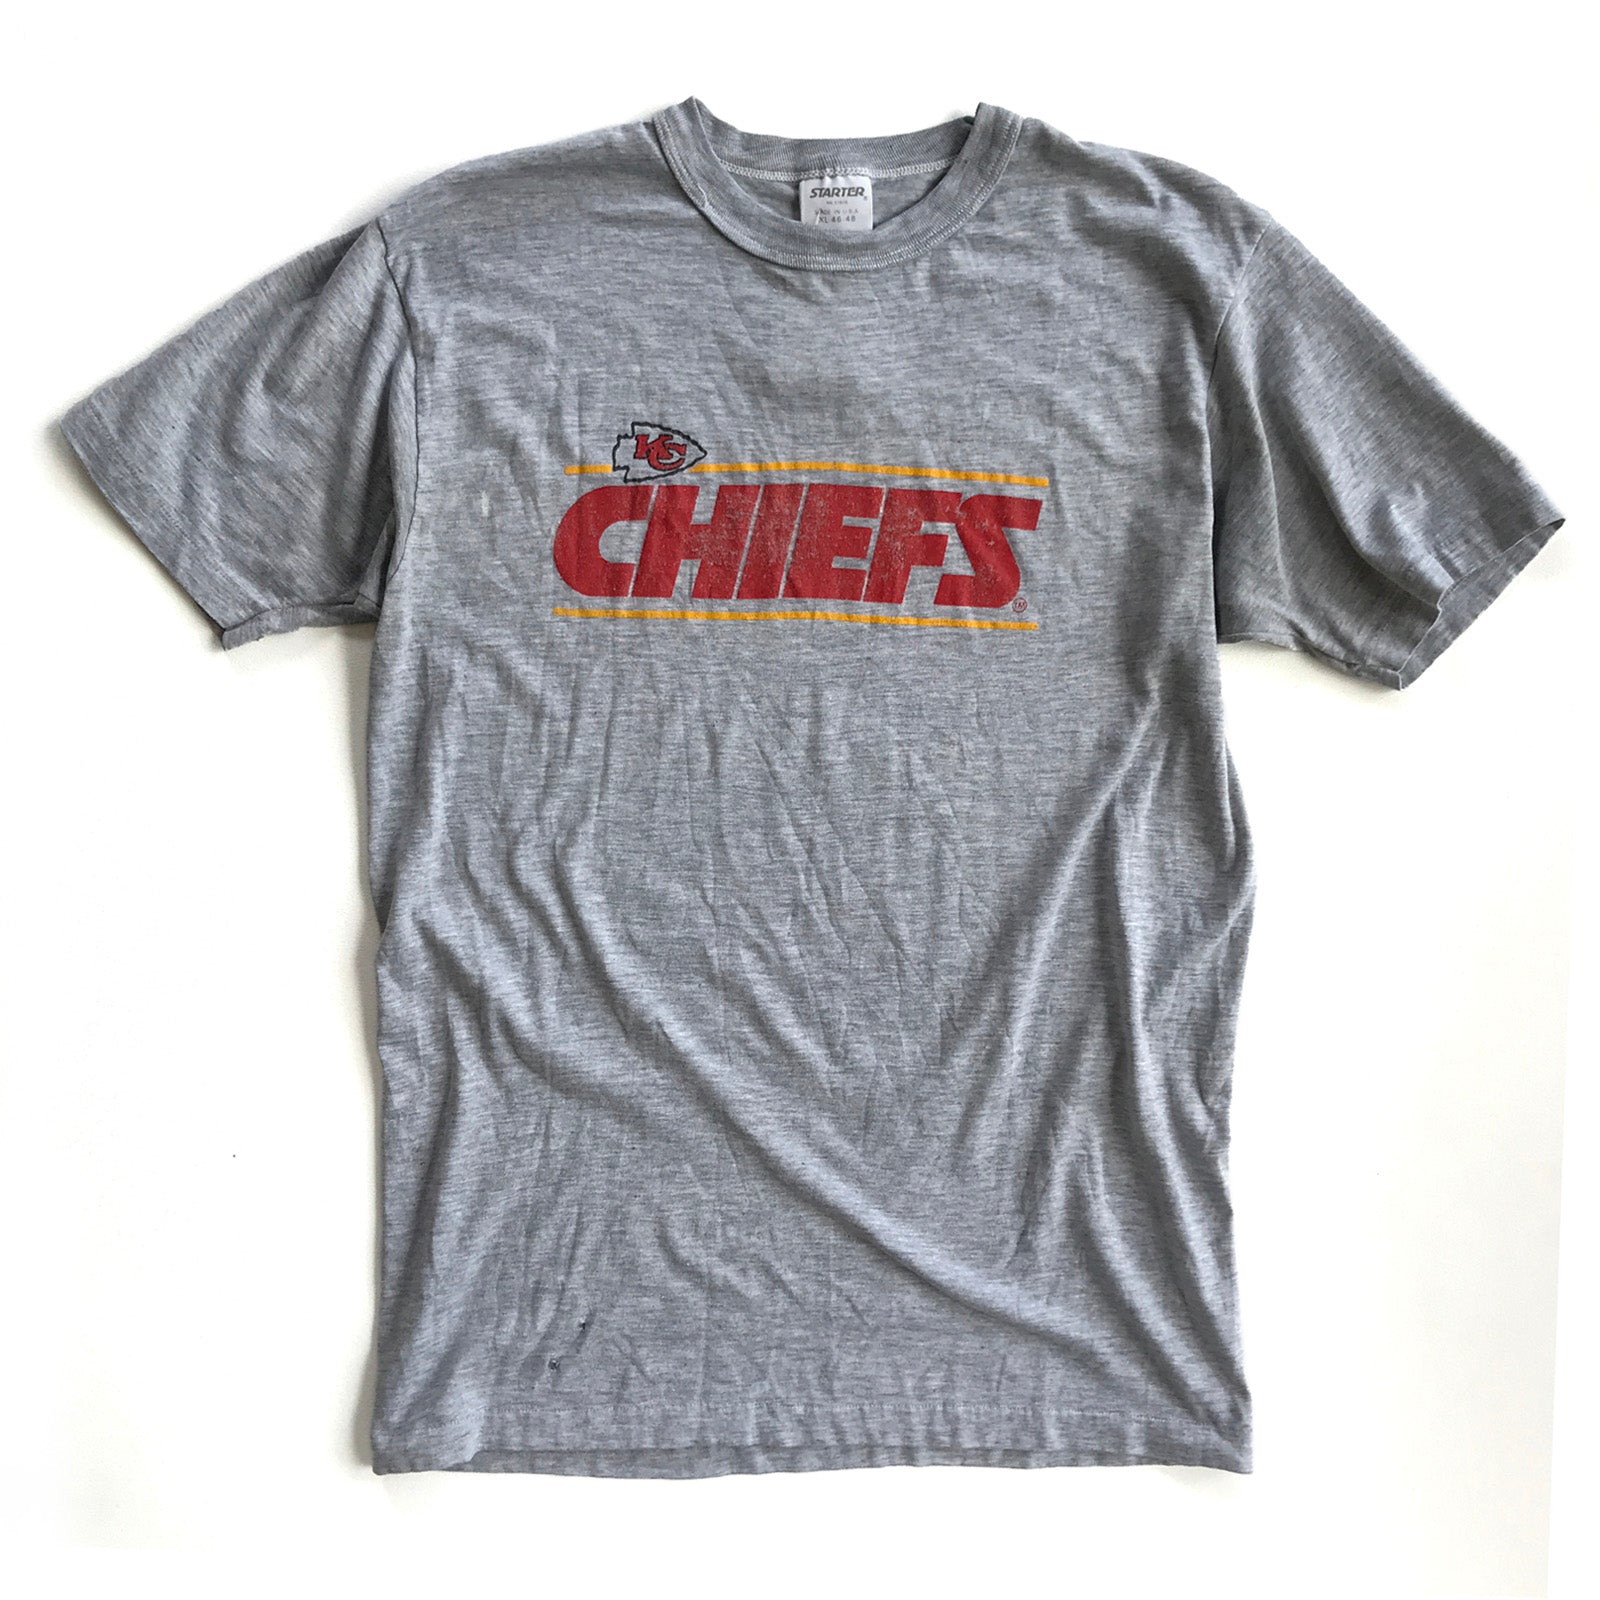 kansas city chiefs t shirt